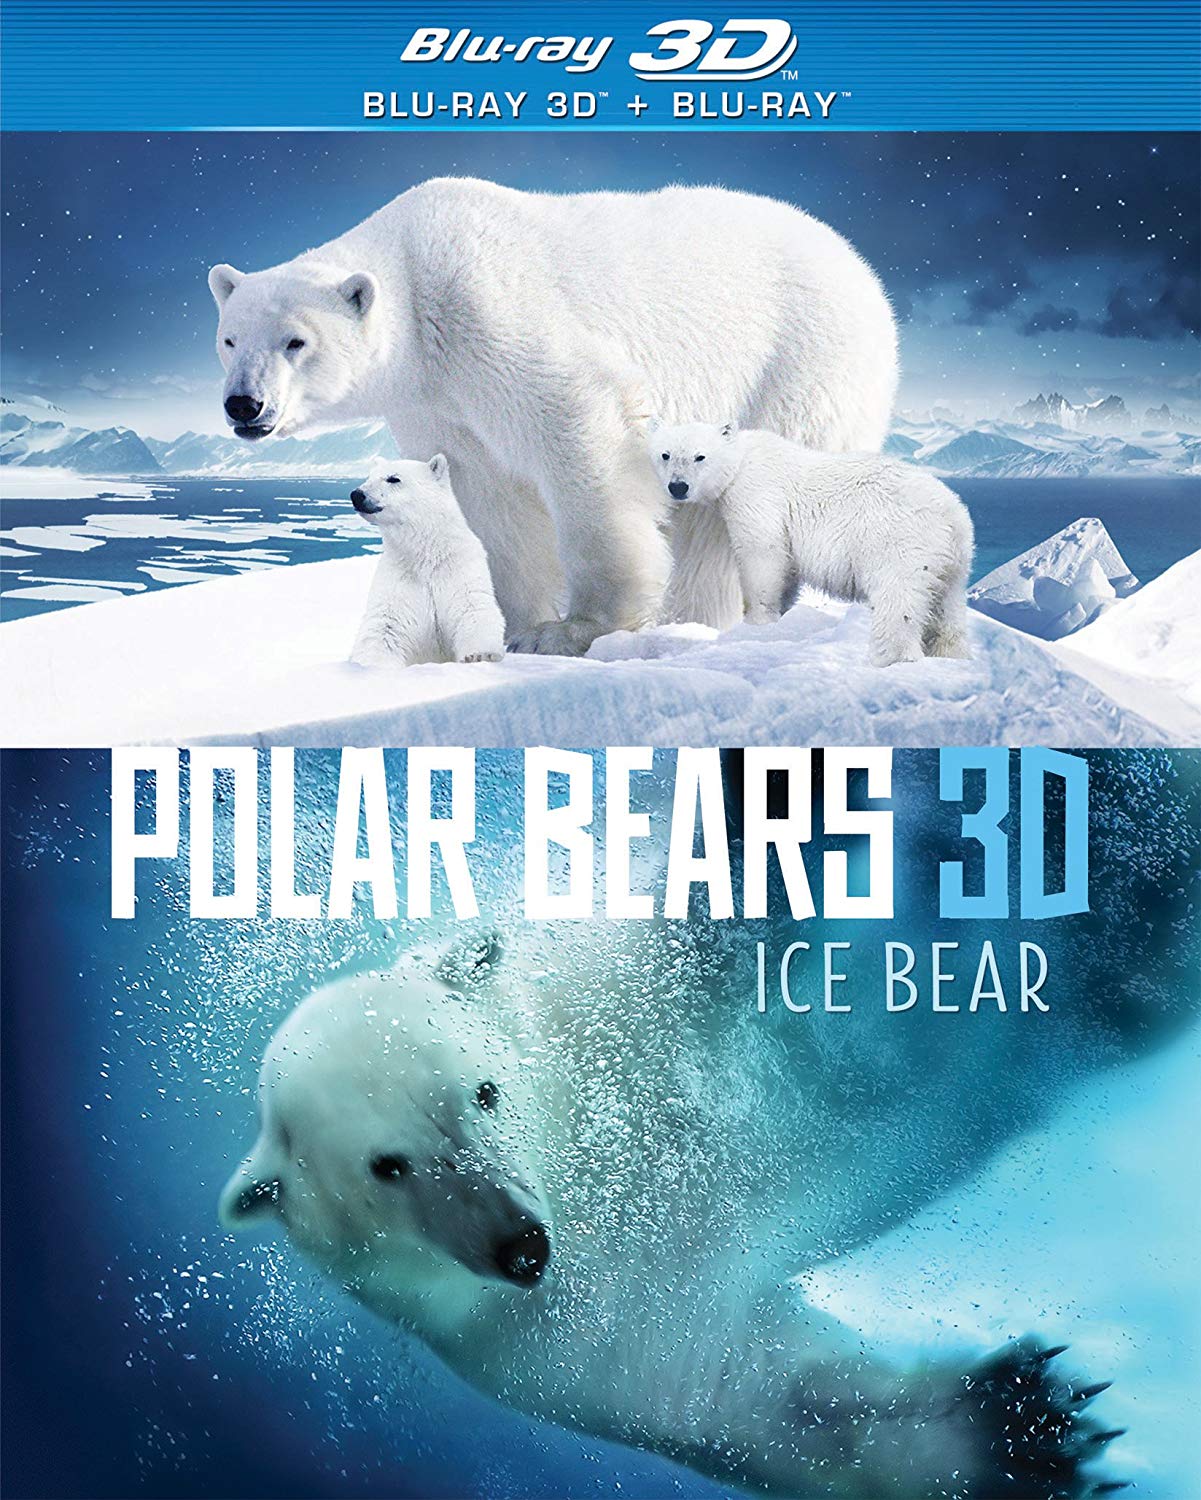 Arctic Bear Productions: Ice Bear 3D Film Documentary